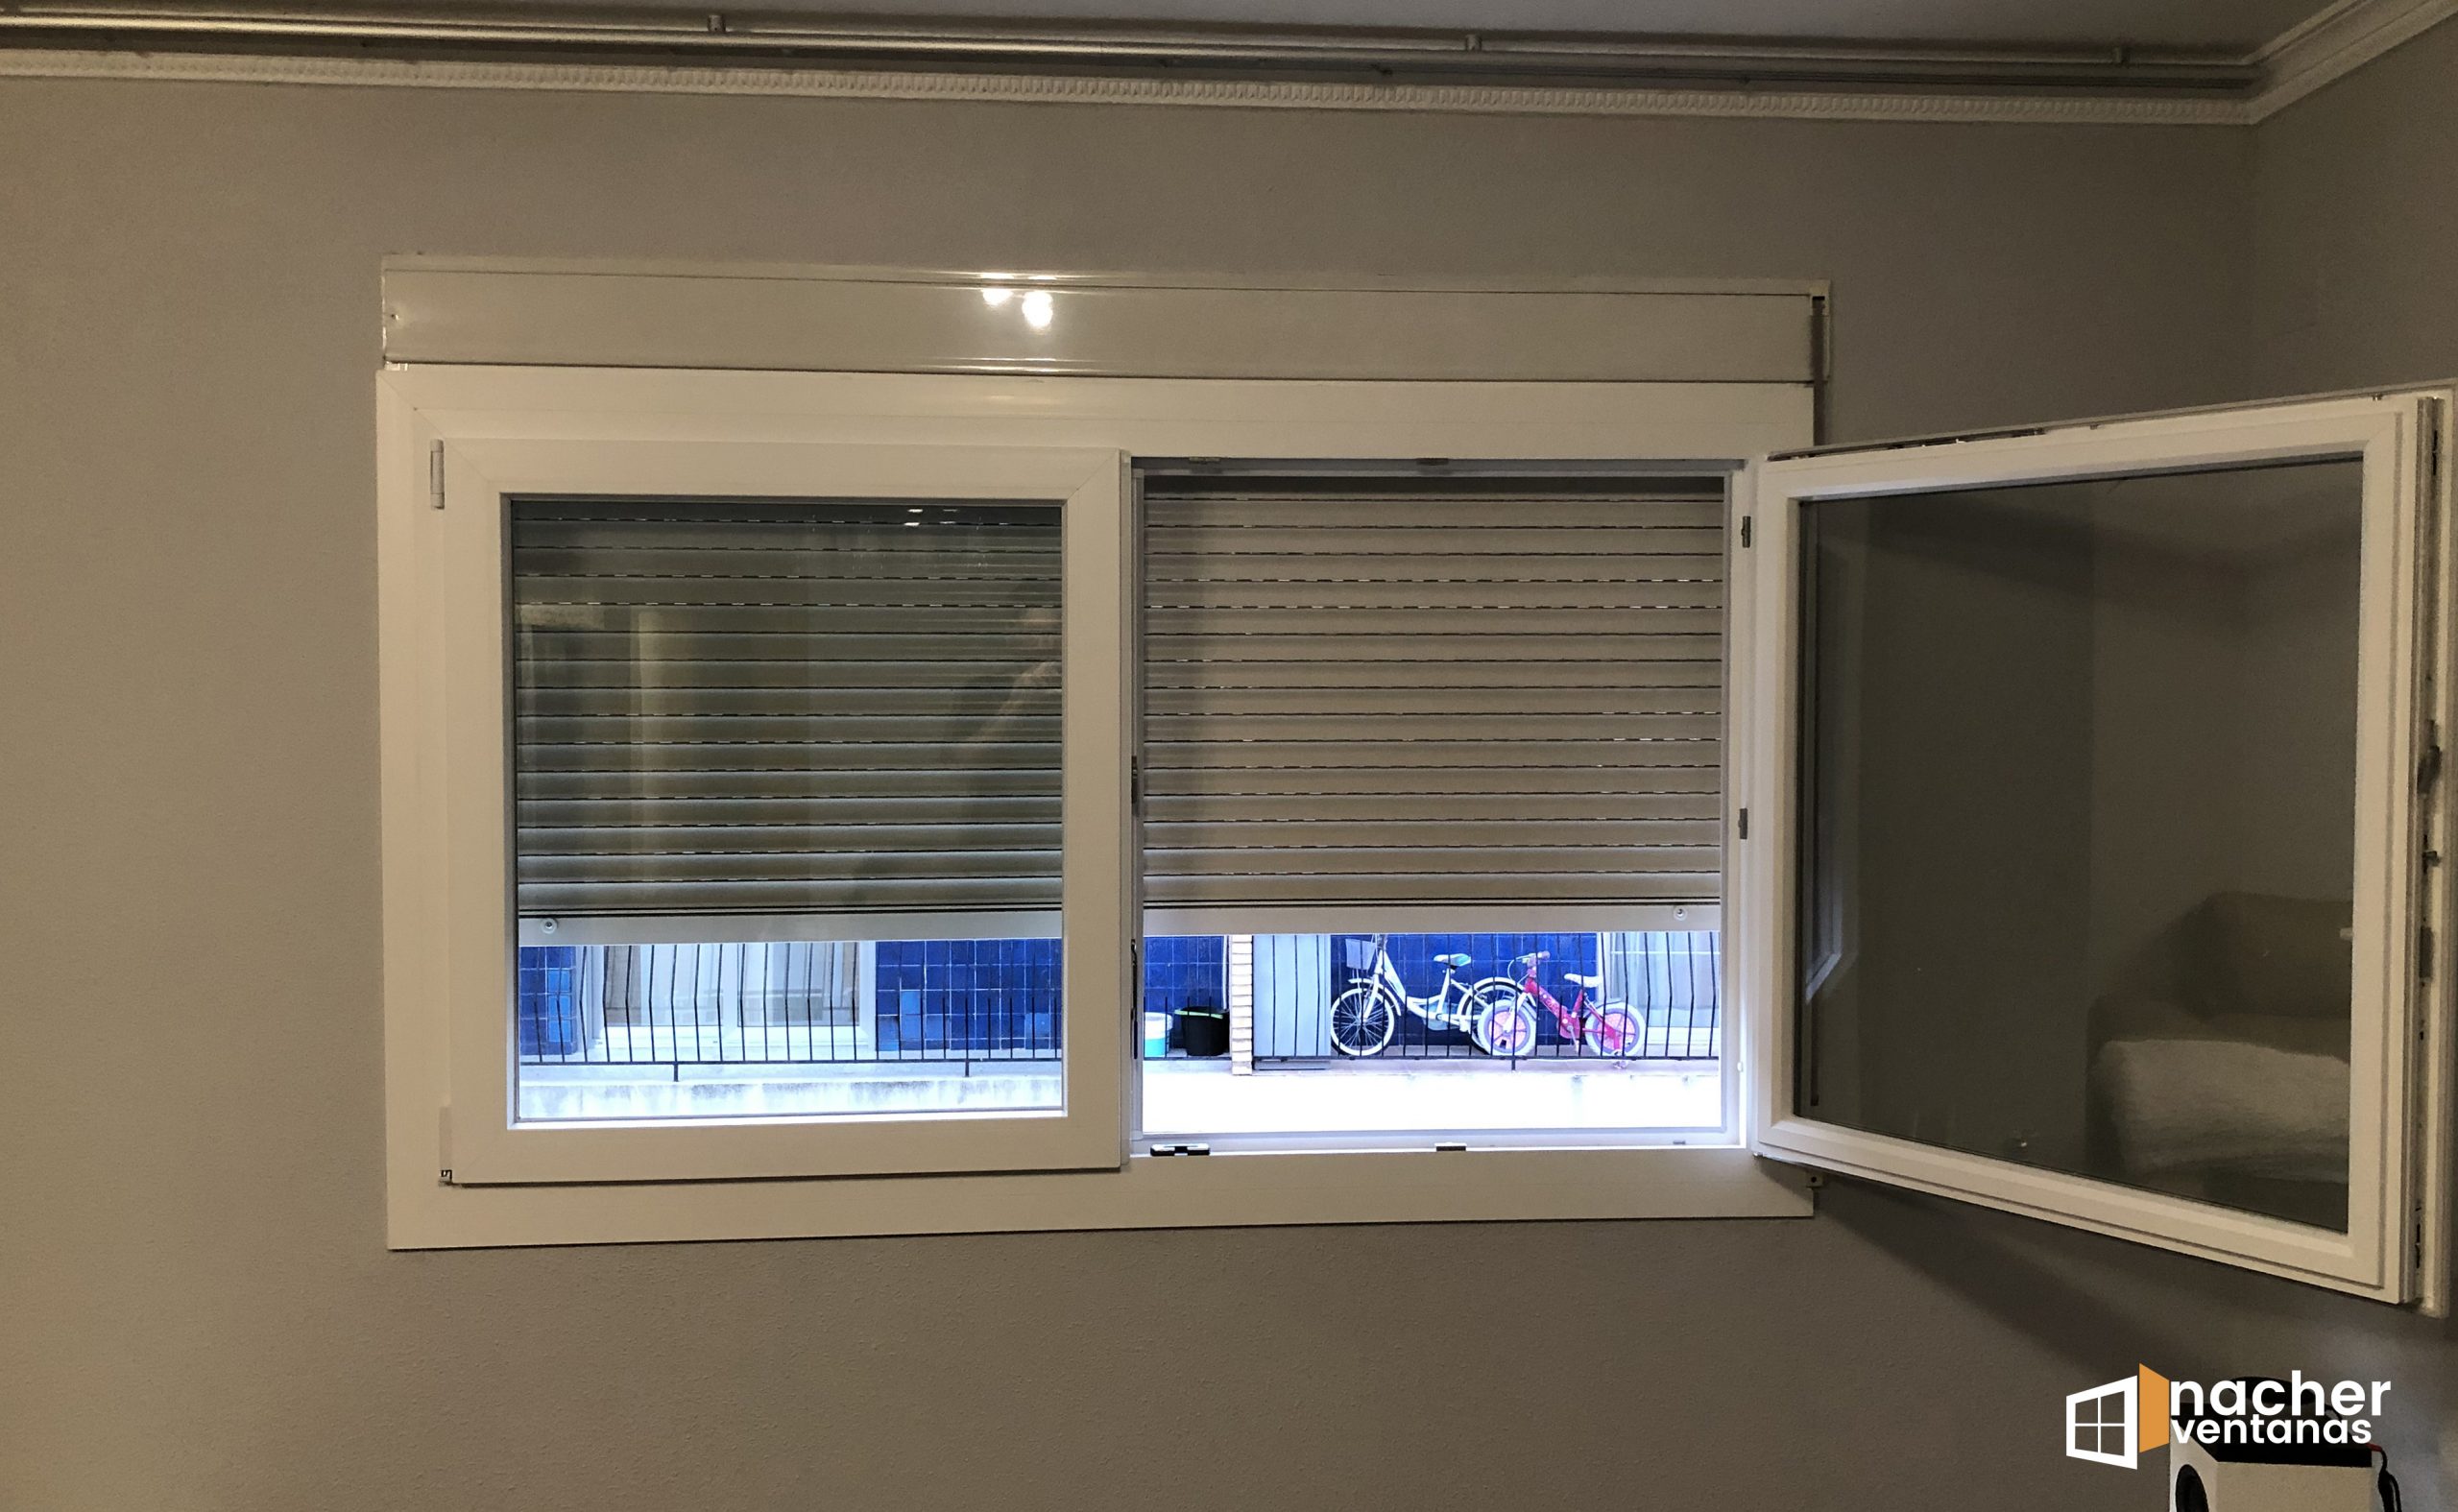 Aislamiento térmico para ventanas: Mejores opciones